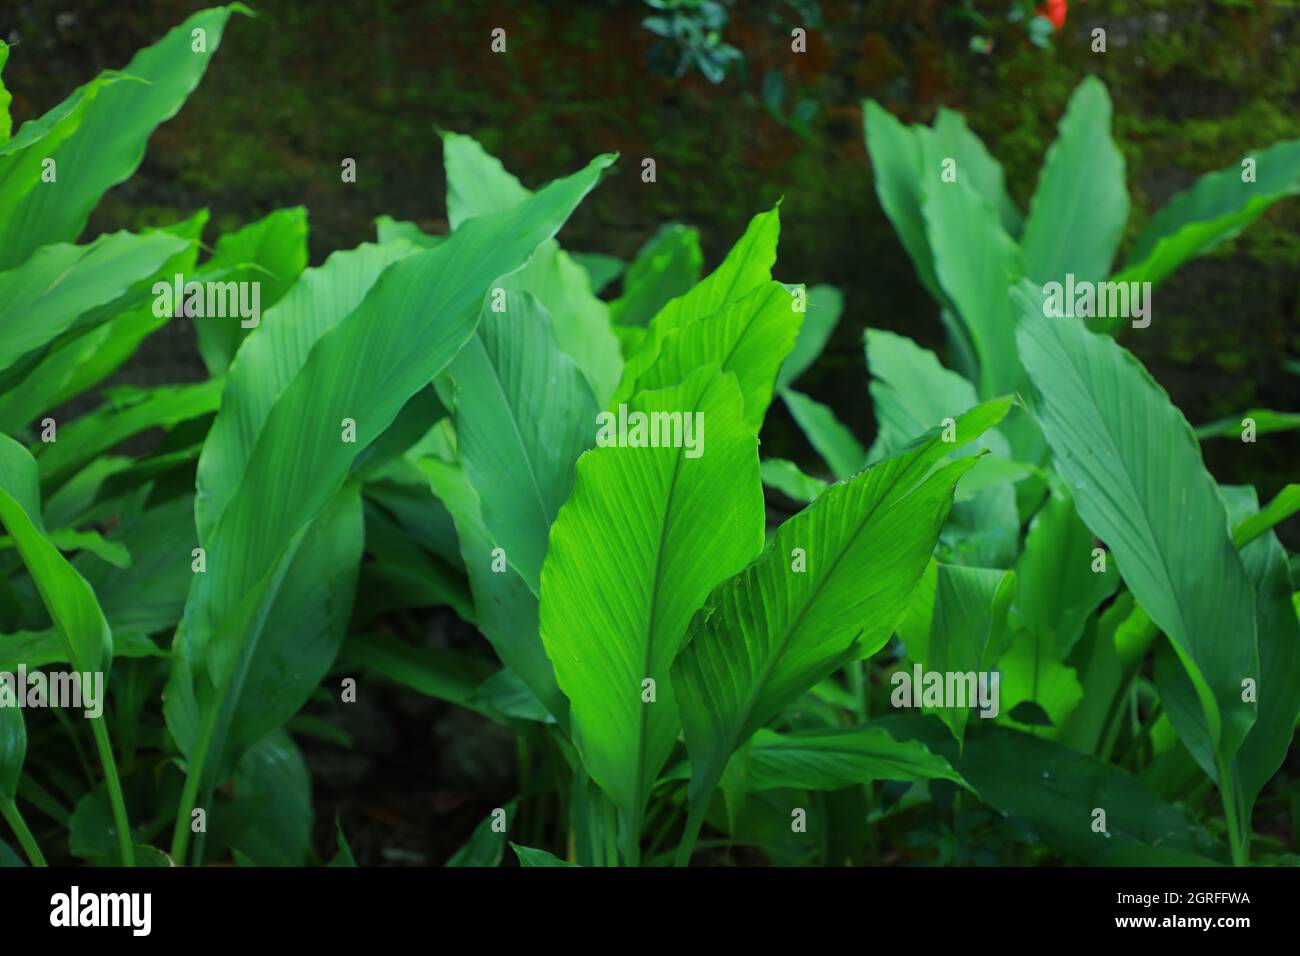 Ein Foto von den Blättern einer ausgewachsenen Kurkuma-Pflanze. (Kurkuma ist eine blühende Pflanze. Curcuma longa aus der Ingwerfamilie.) Colombo, Sri lanka. Stockfoto